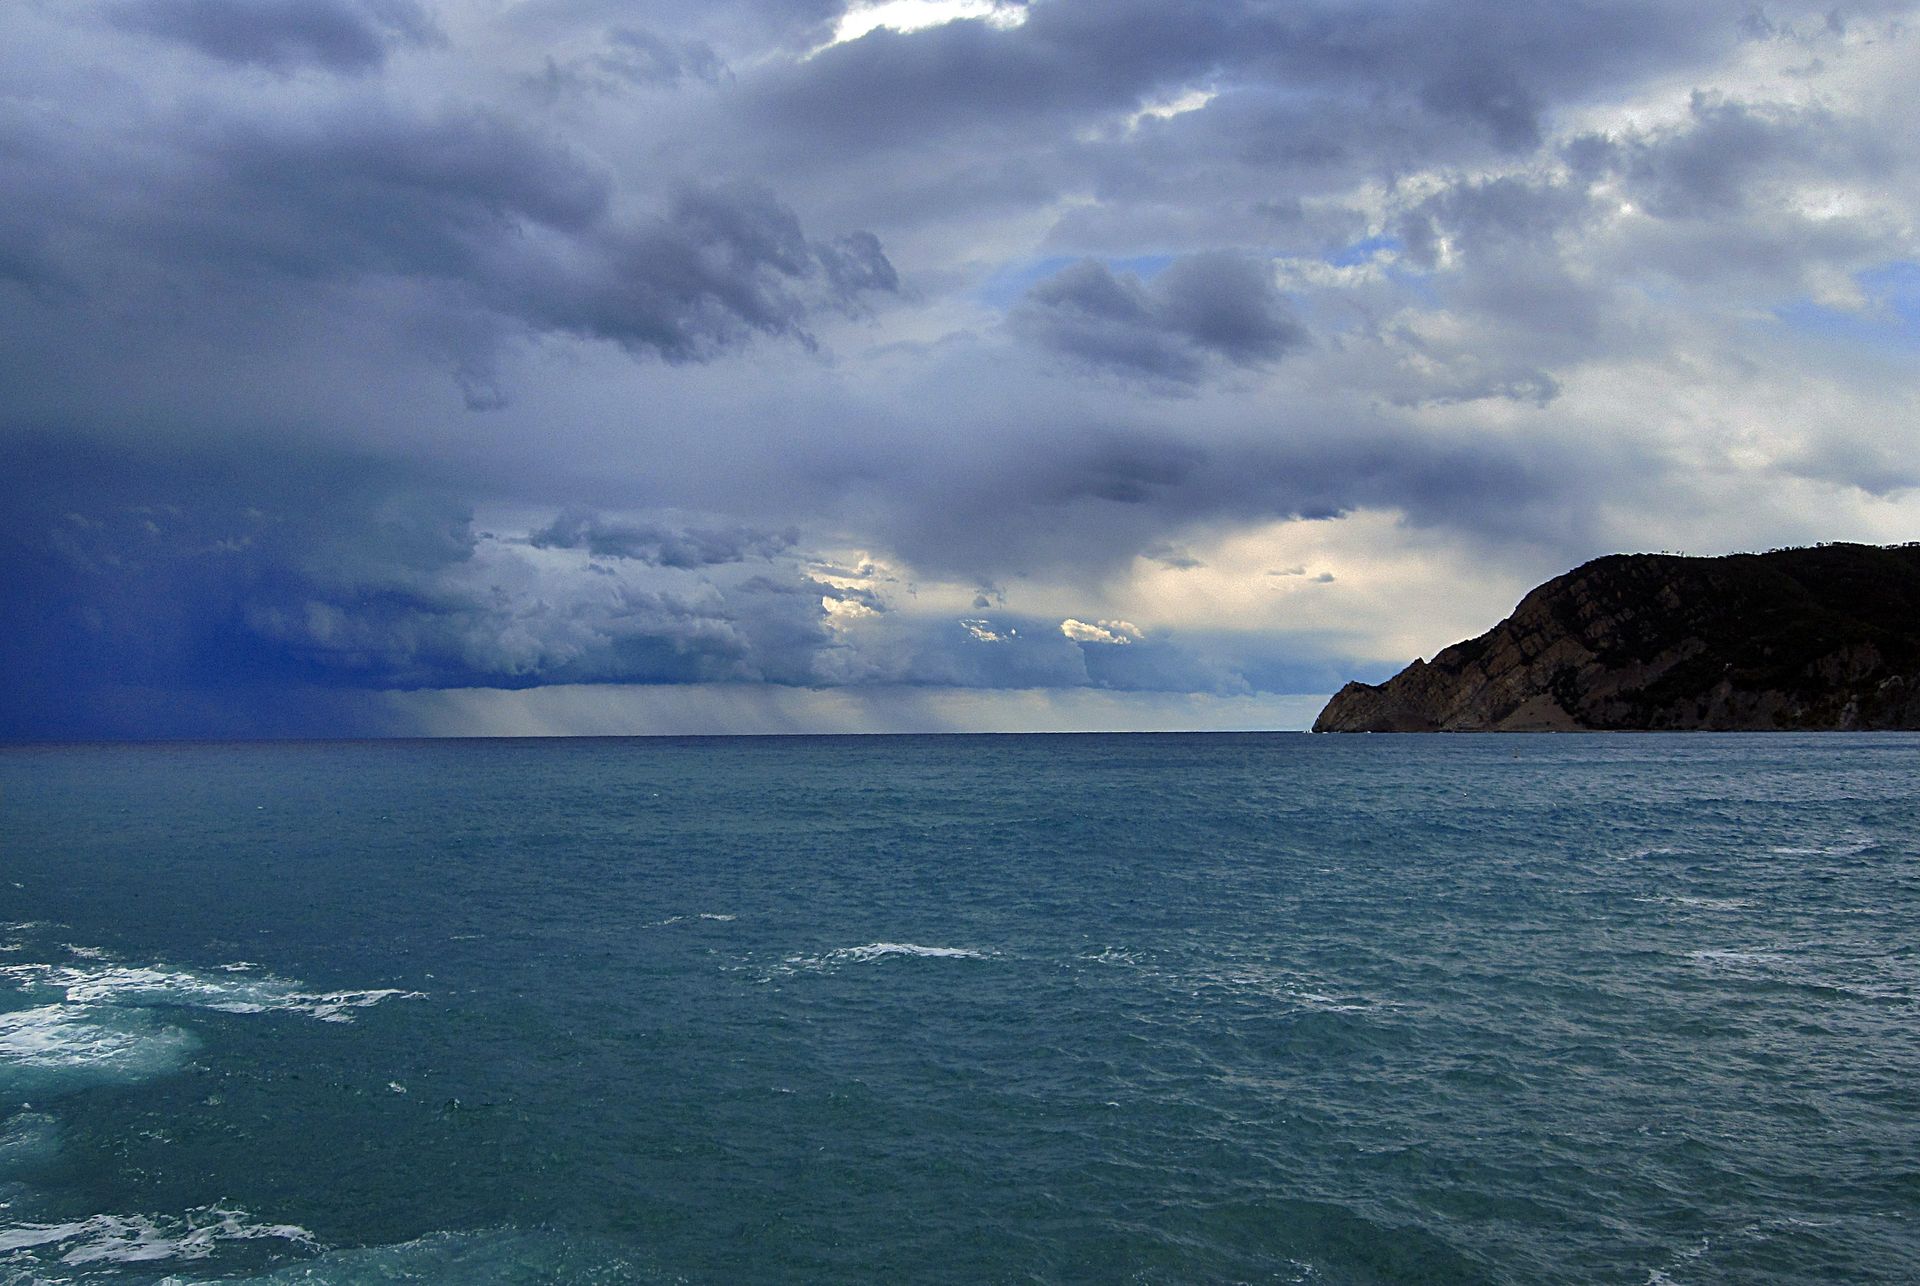 A dark, cloudy sky over the ocean and coast.